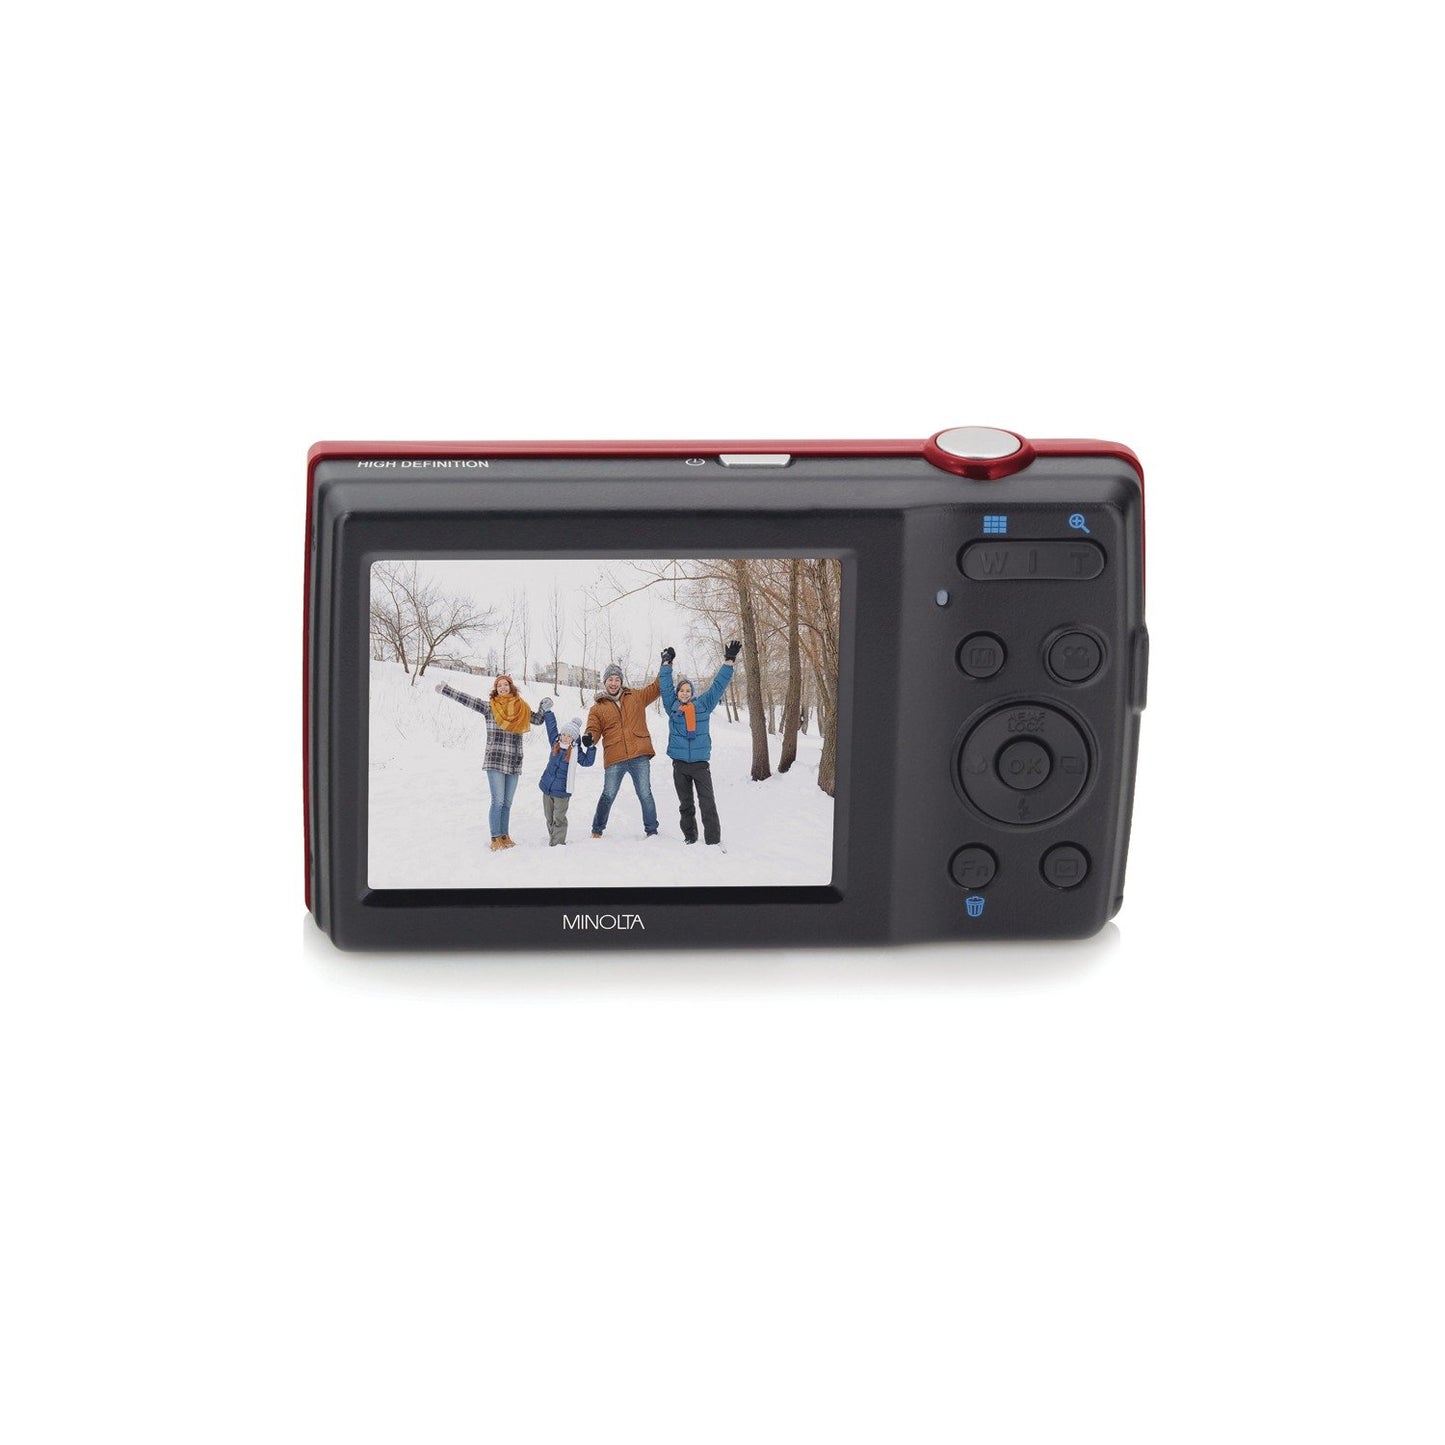 Minolta MN5ZR 20.0-Megapixel MN5Z HD Digital Camera with 5x Zoom (Red)